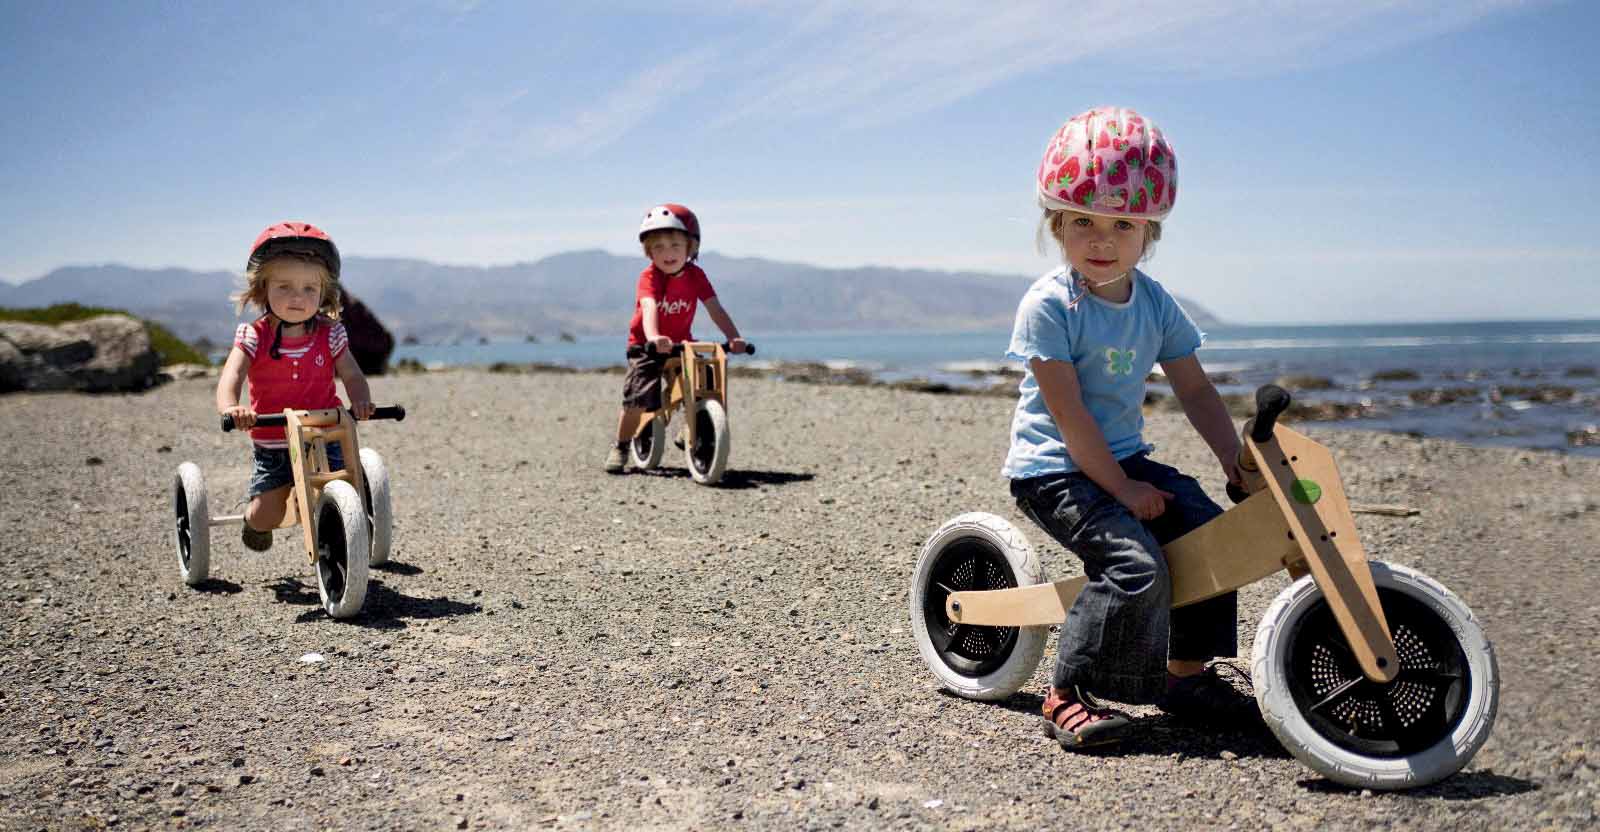 Bicicleta sustentável: brinquedo se ajusta ao desenvolvimento da criança